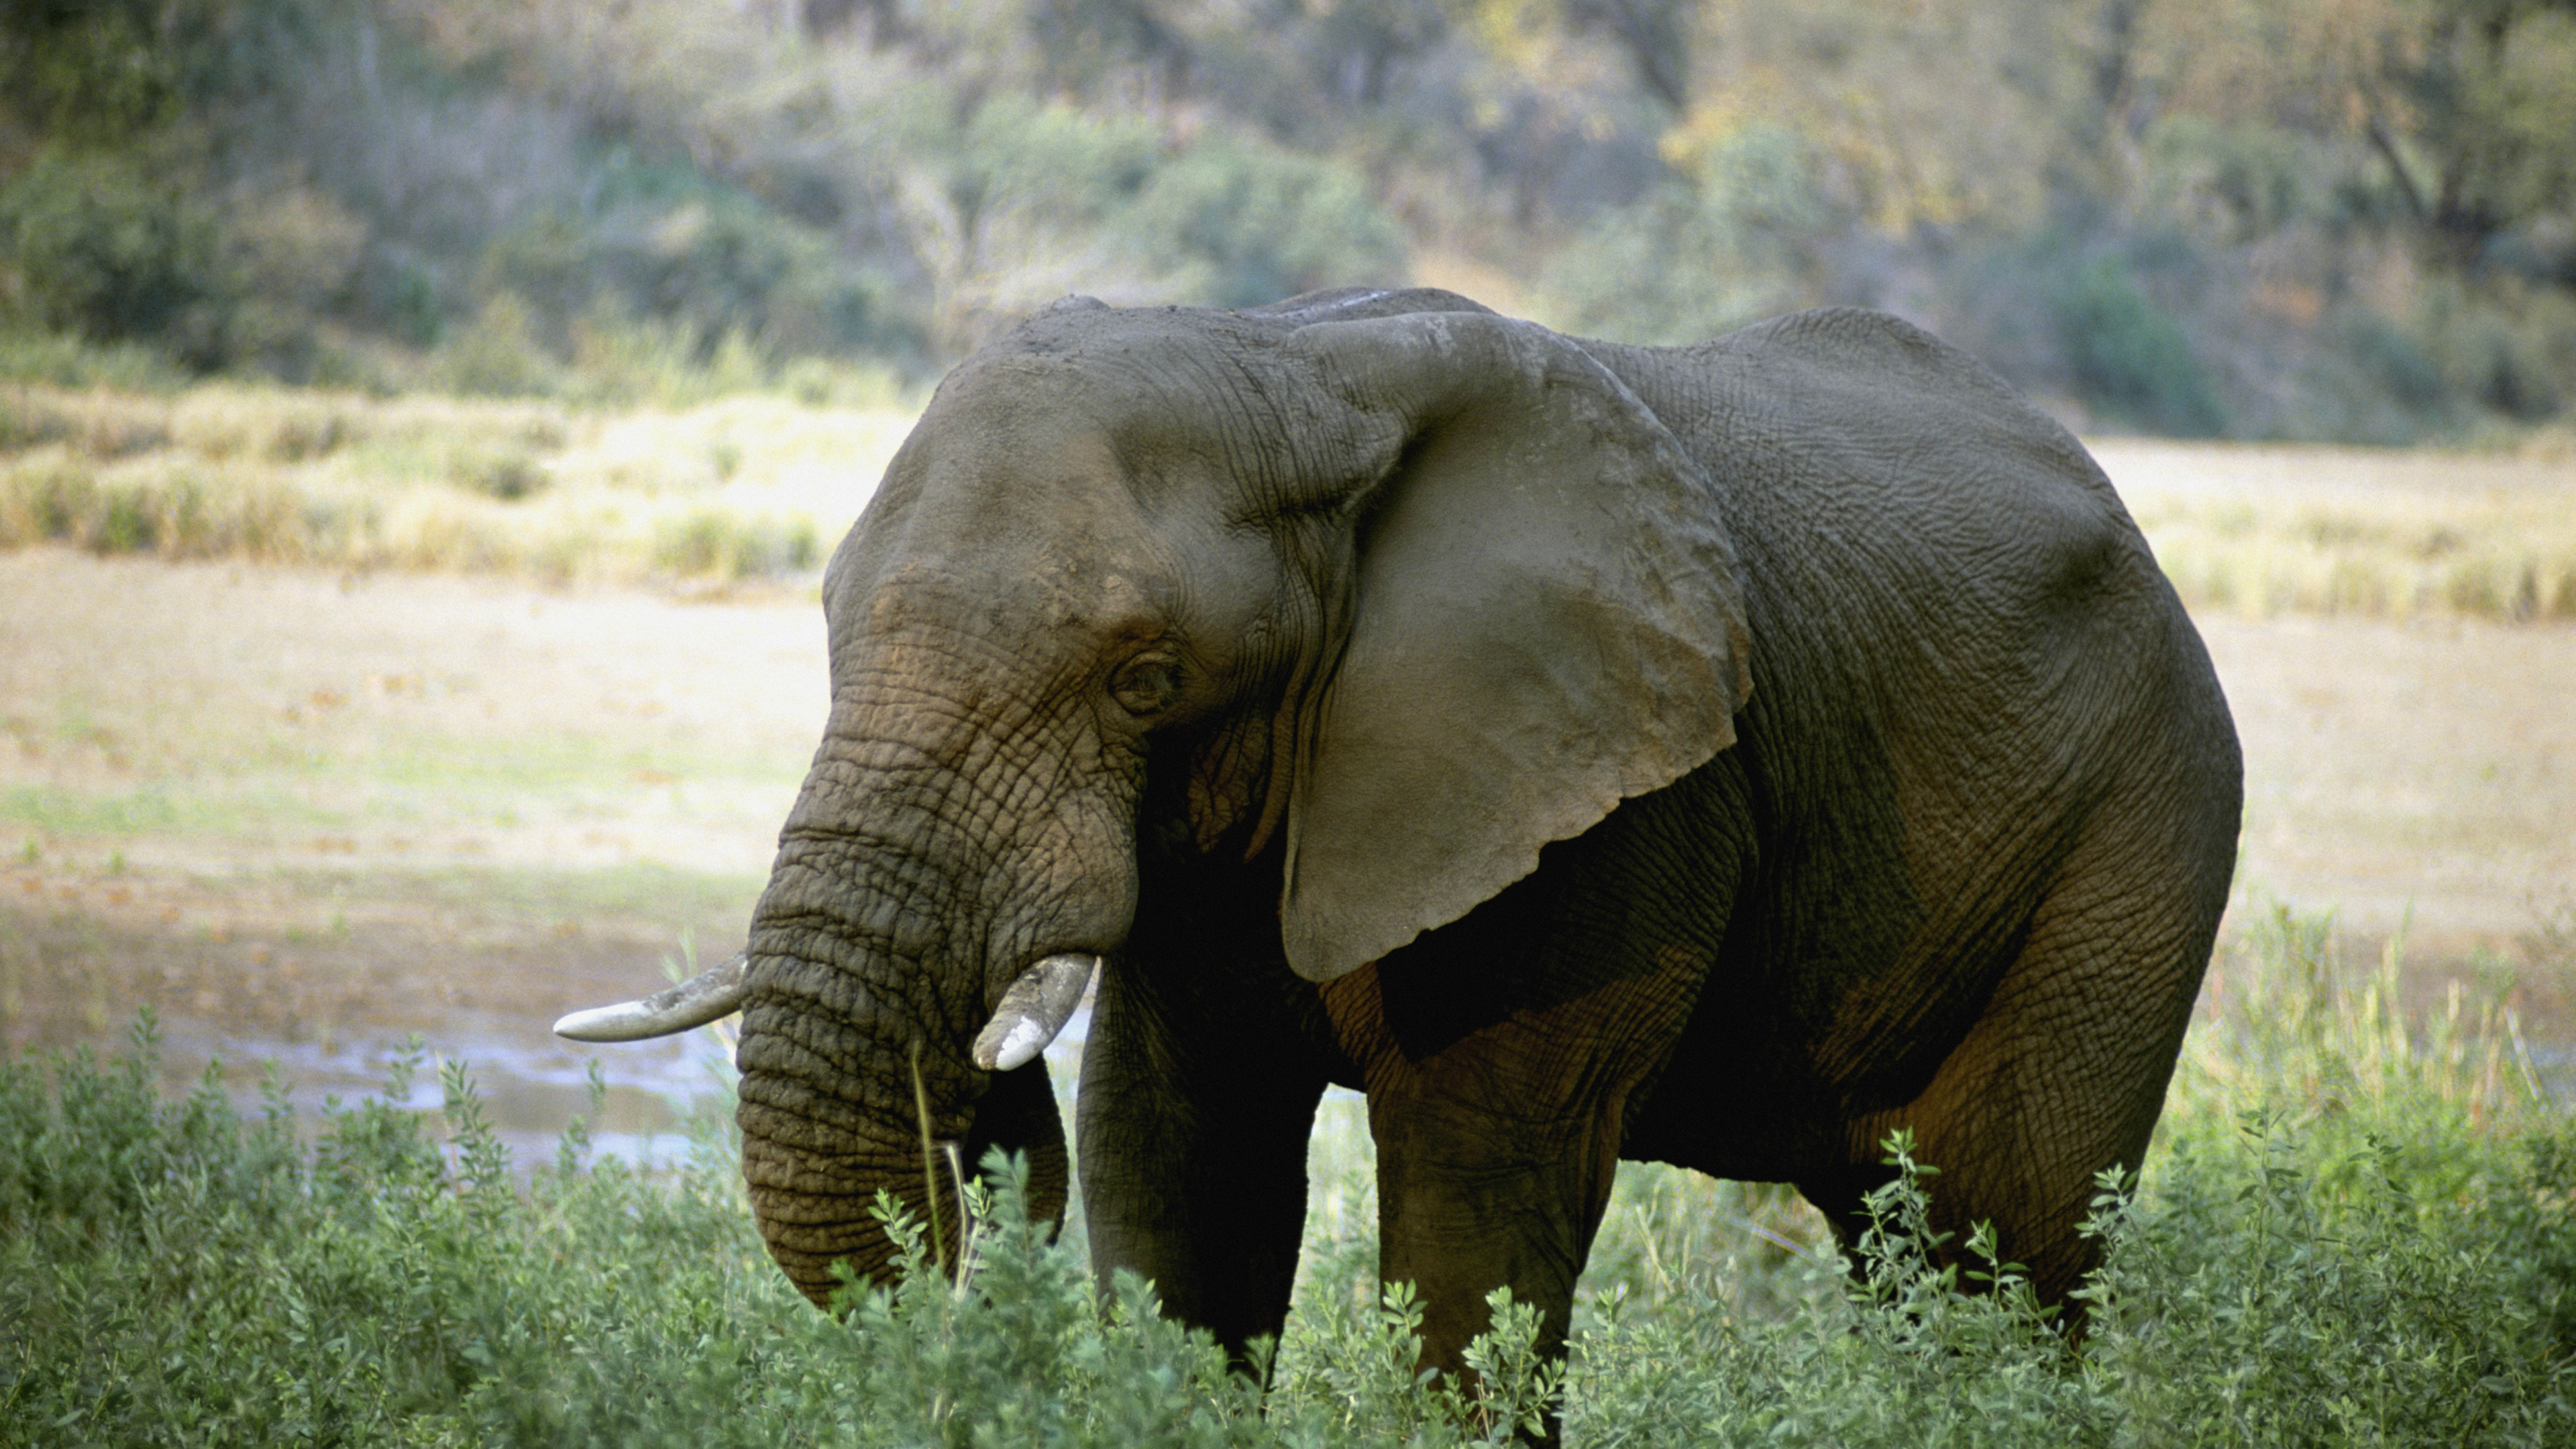 獠牙, 陆地动物, 野生动物, 大象和猛犸象, 印度大象 壁纸 3840x2160 允许